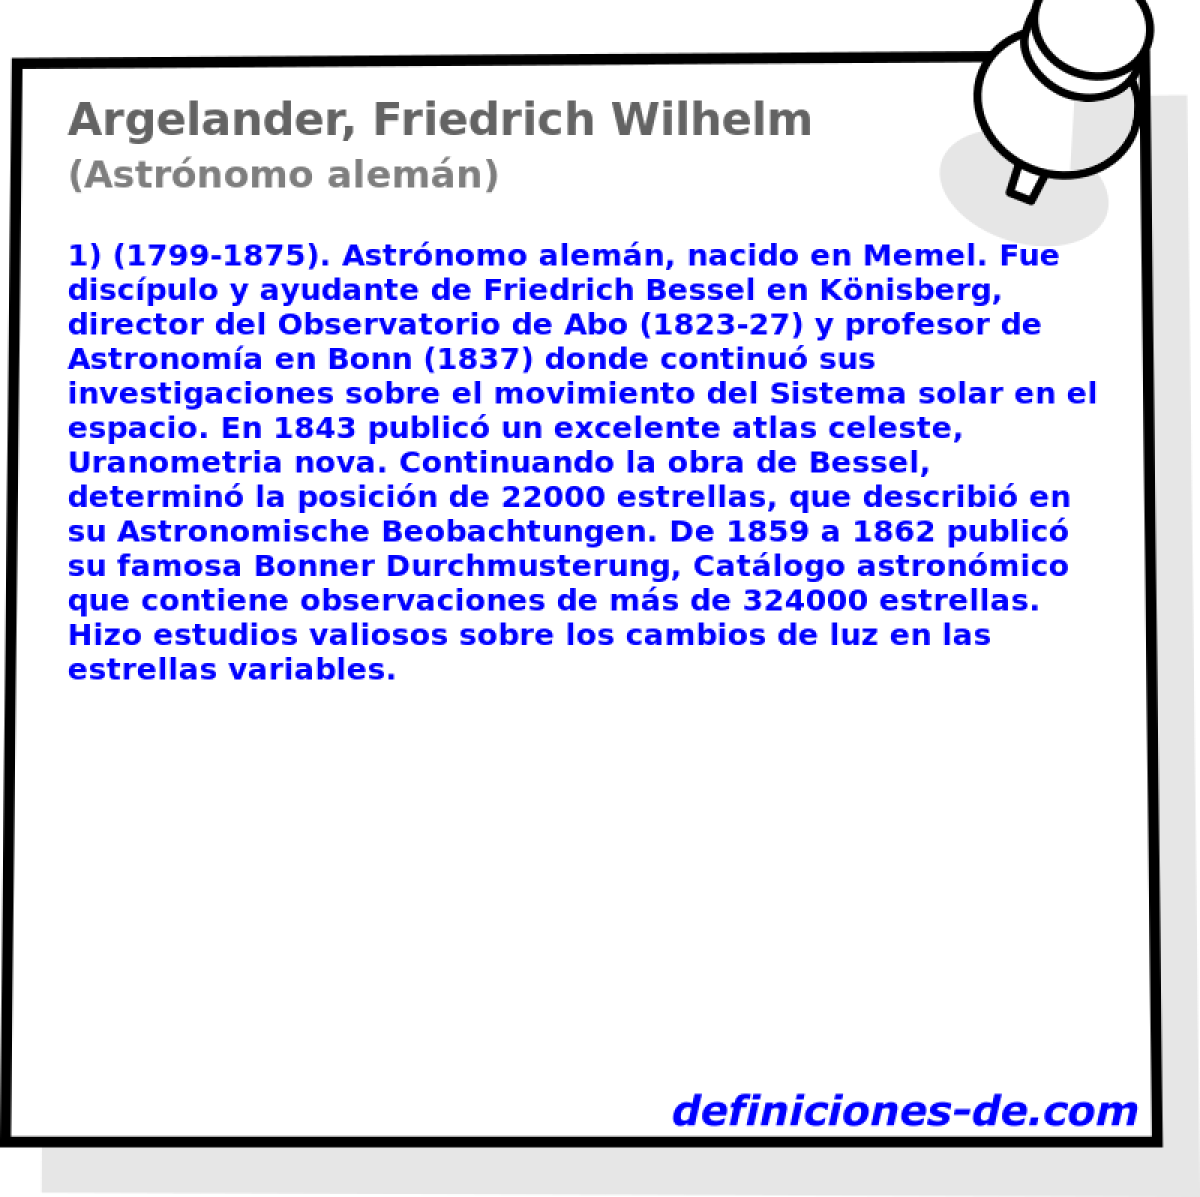 Argelander, Friedrich Wilhelm (Astrnomo alemn)